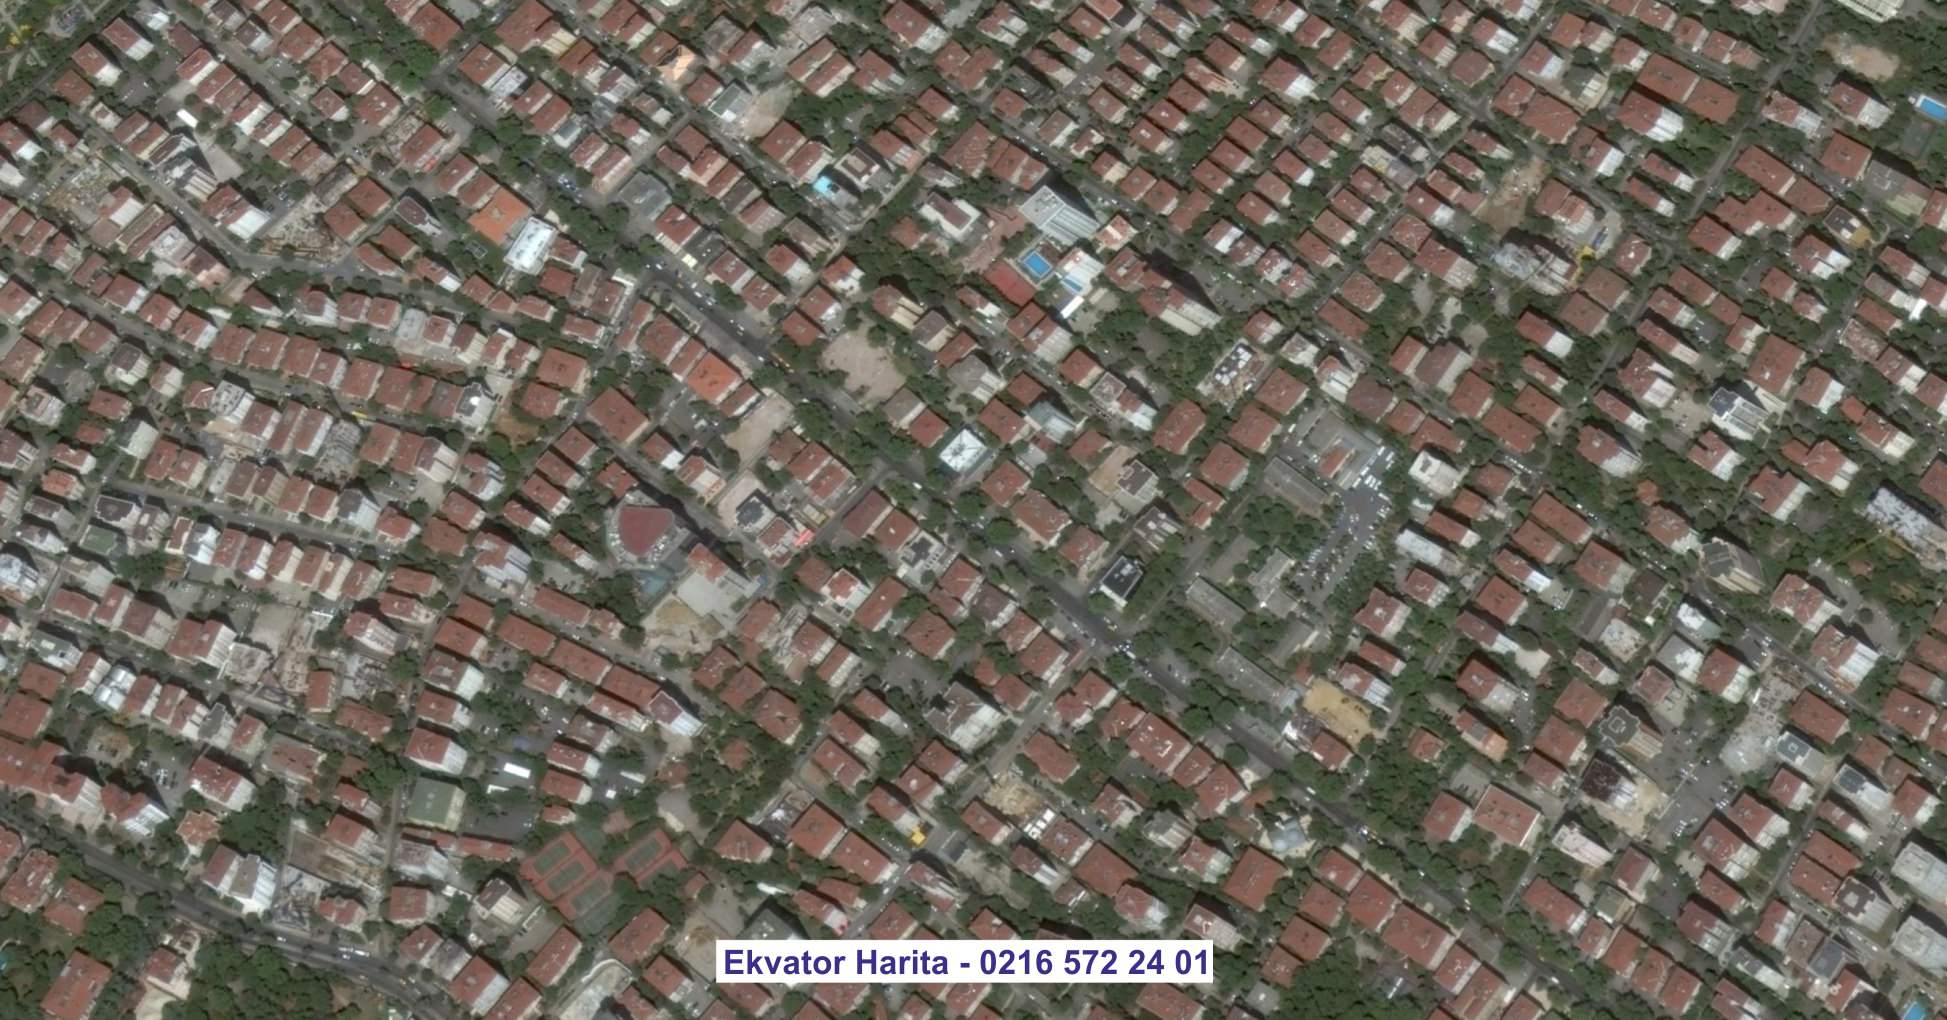 Bitlis Uydu Görüntüsü Örnek Fotoğrafı